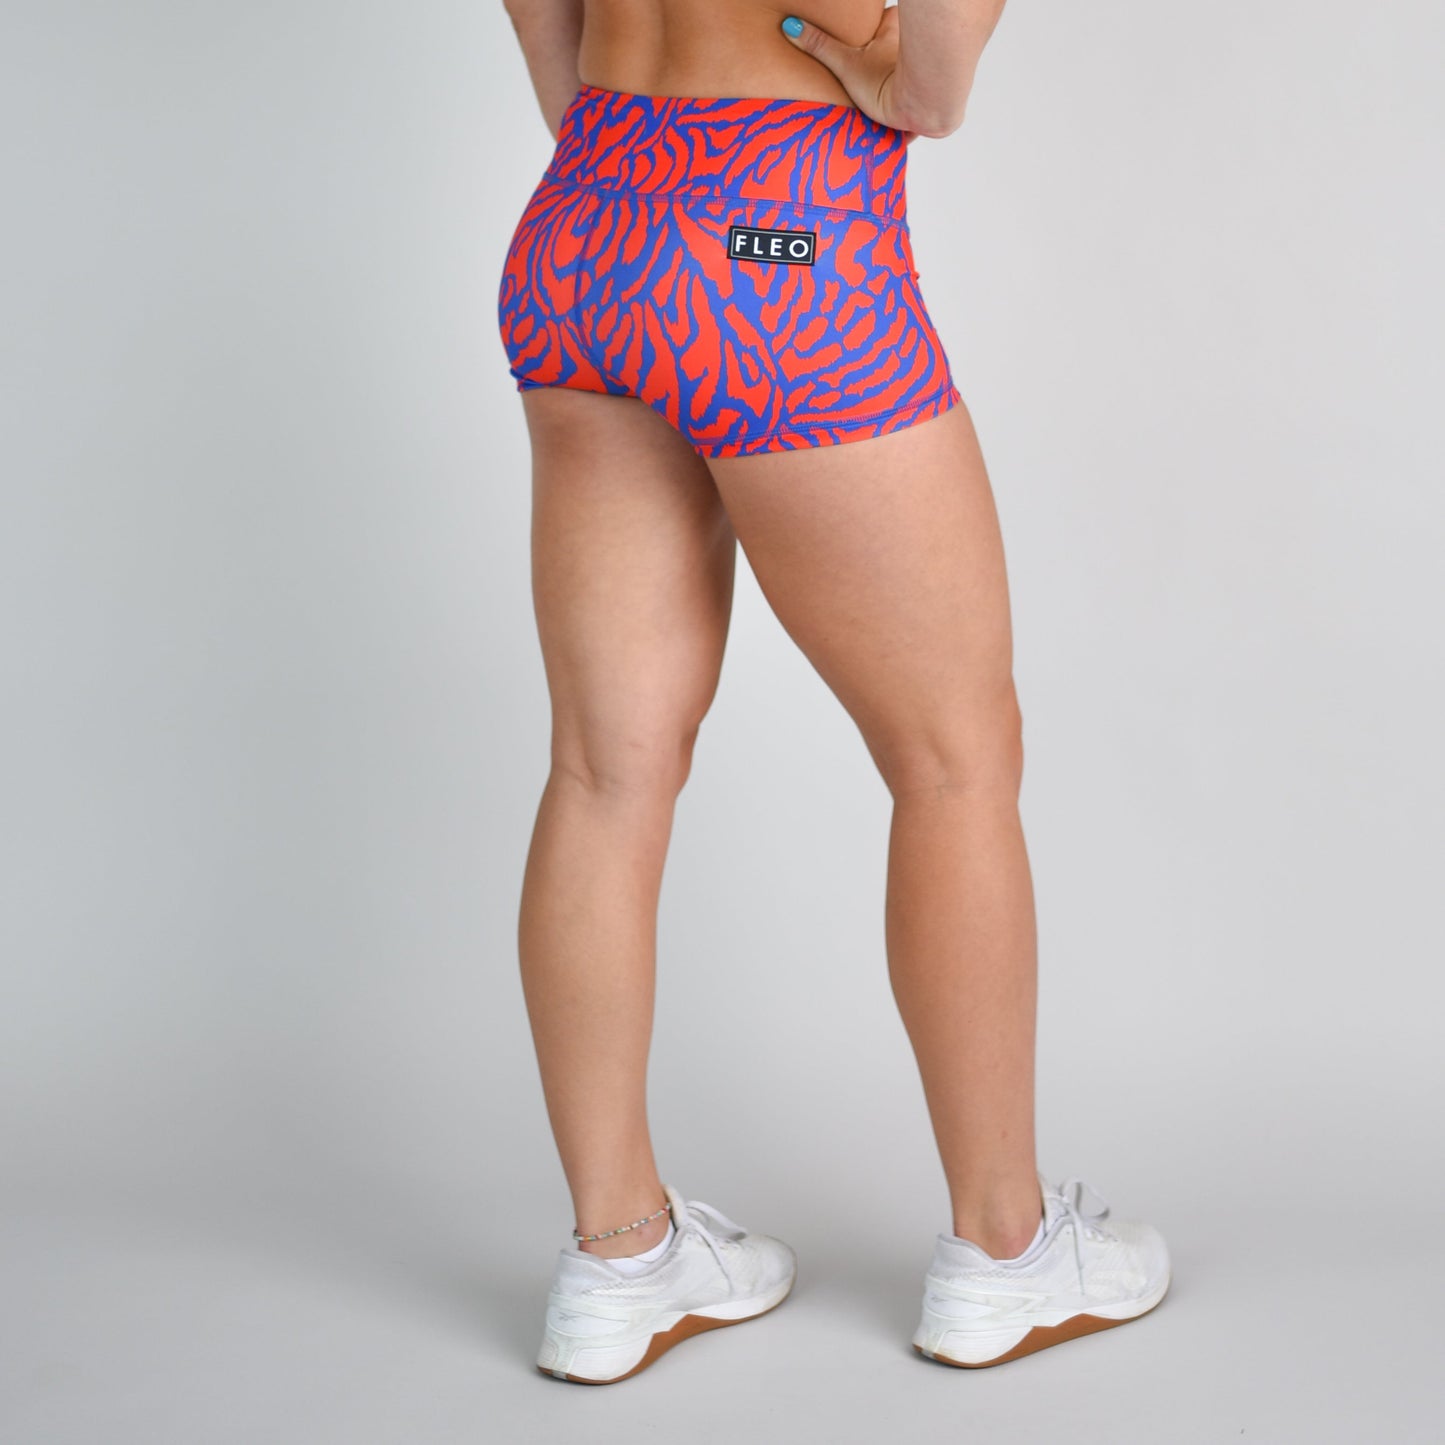 FLEO USA Tiger Shorts (Original)